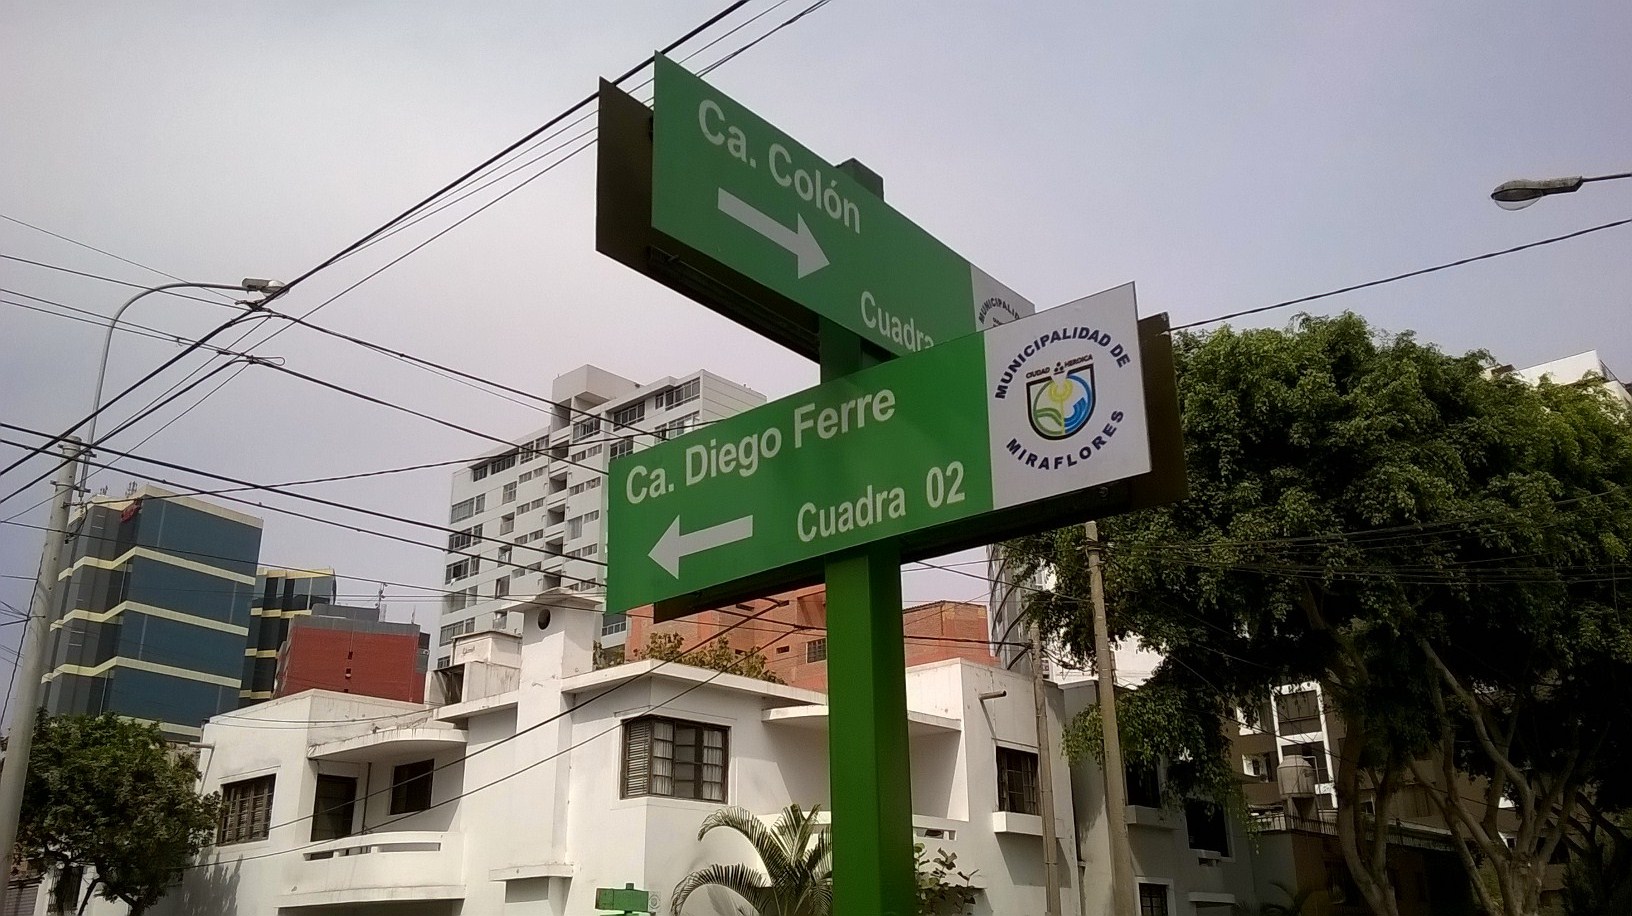 Cruce de las calles Colón y Diego Ferré en Miraflores, Lima, calles recurrentes en las obras del Nóbel peruano. Foto de la autora, usada con autorización.